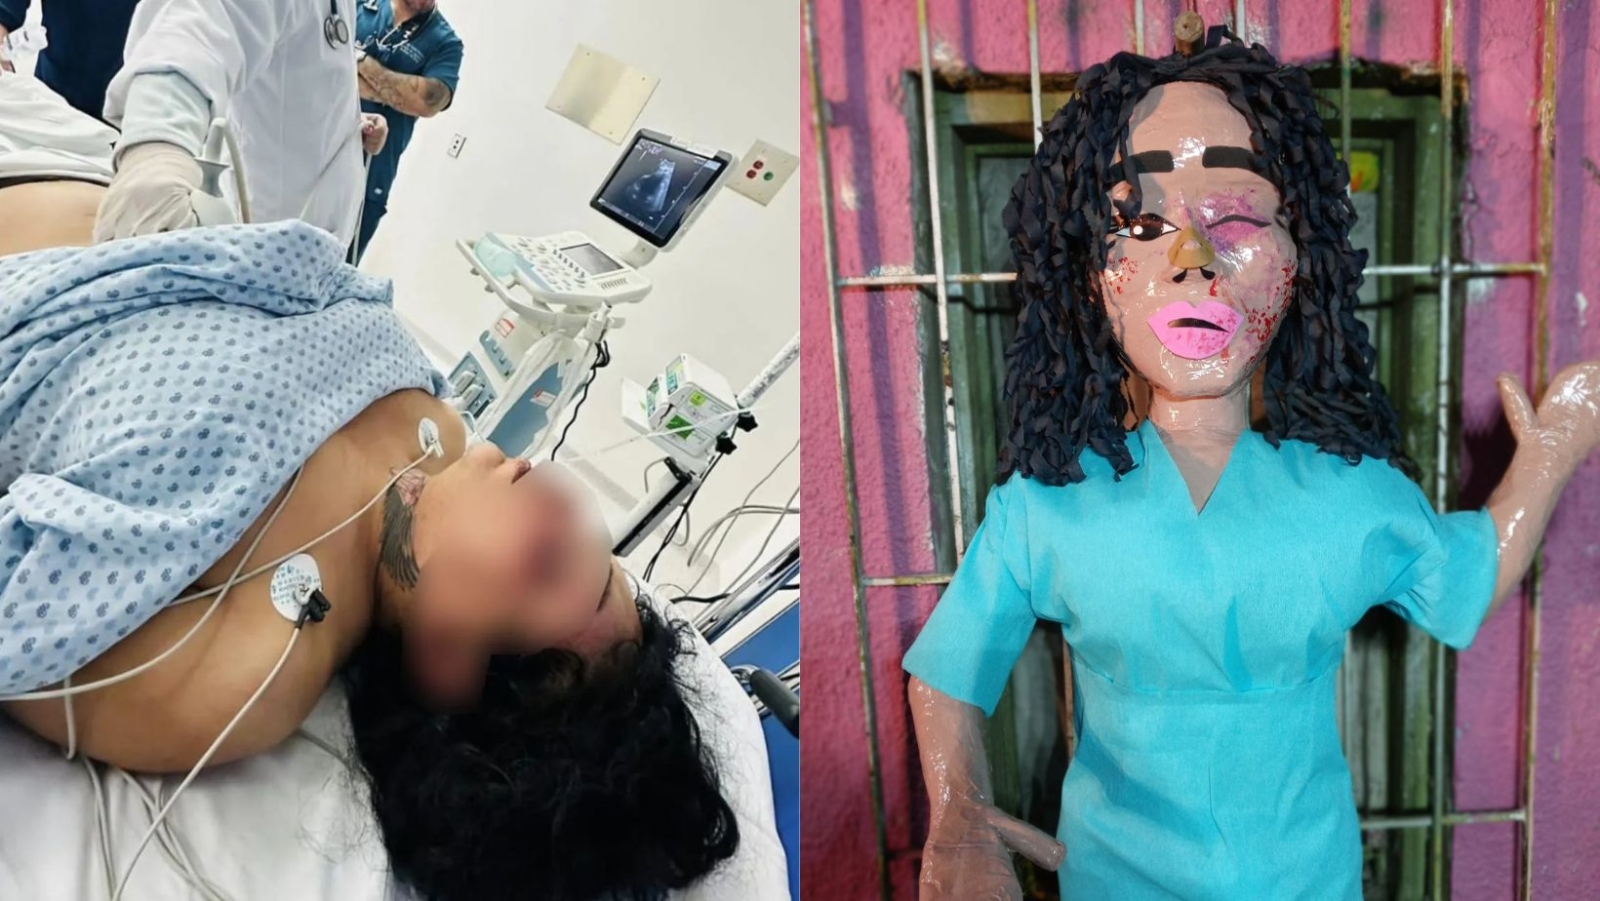 Crean piñata de Paolita Suárez con golpes de su ex: "Es para apoyarla"